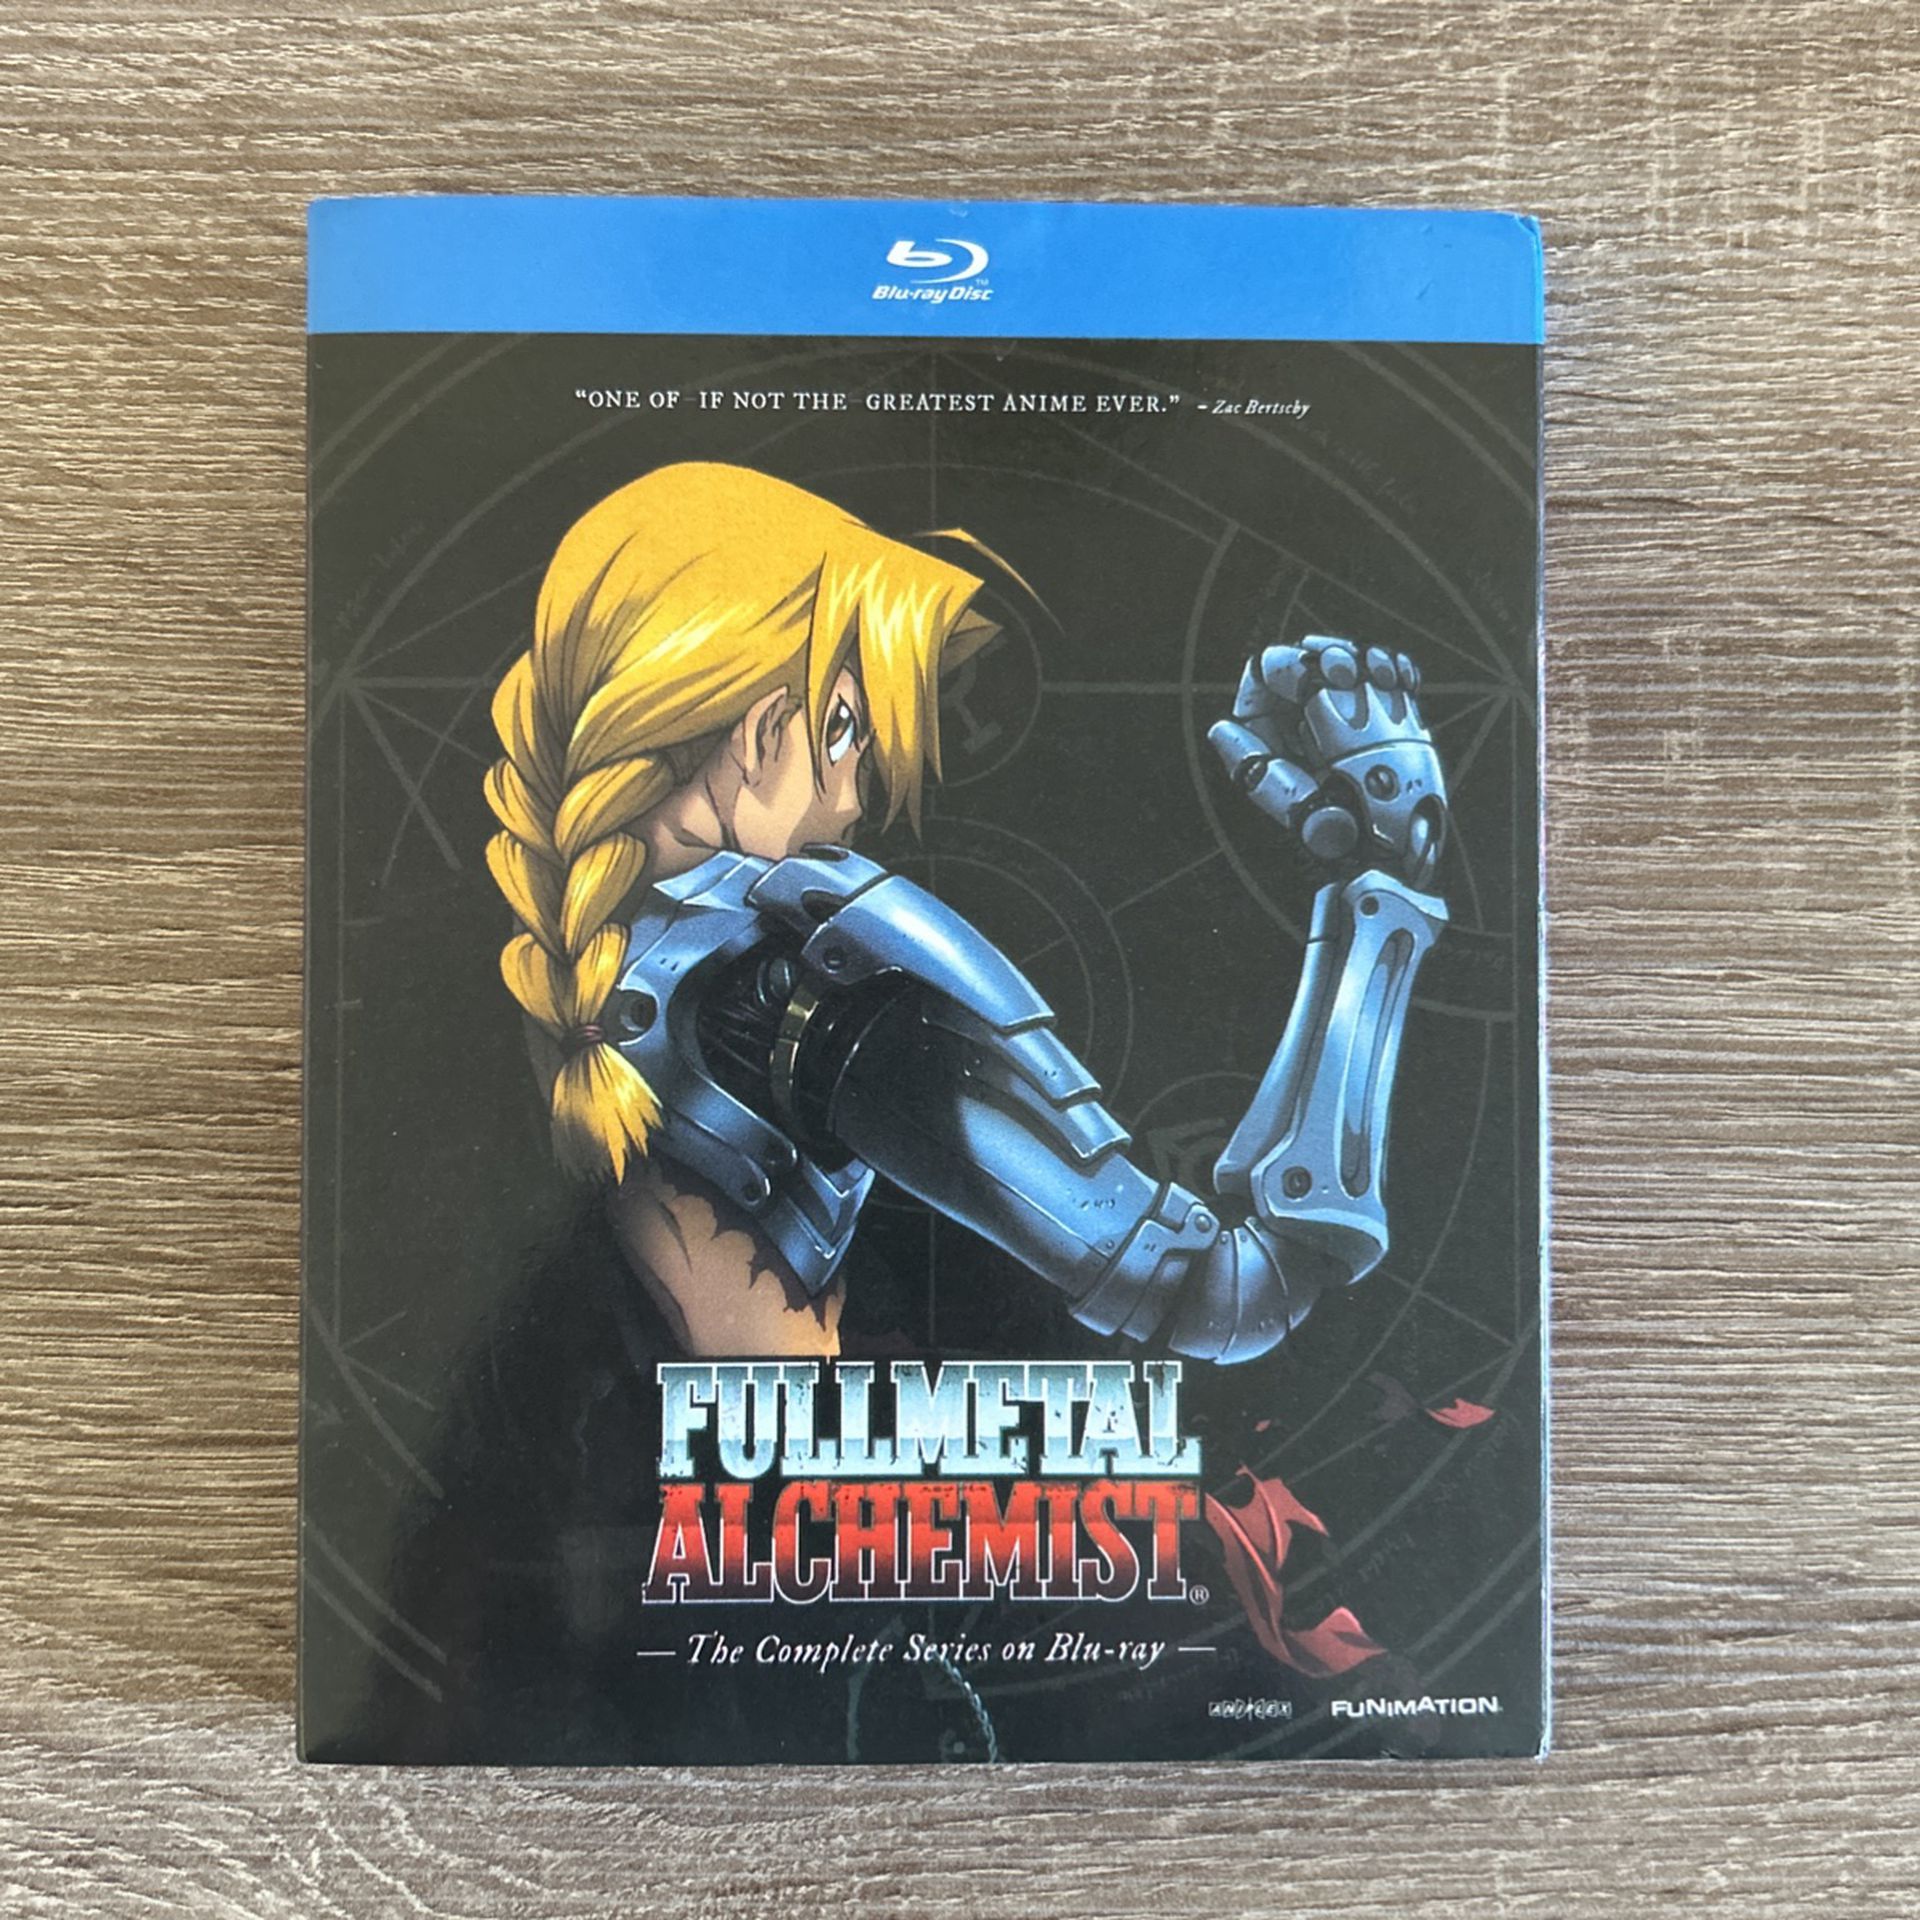 Fullmetal Alchemist(2004) Complete Series On Blu-ray